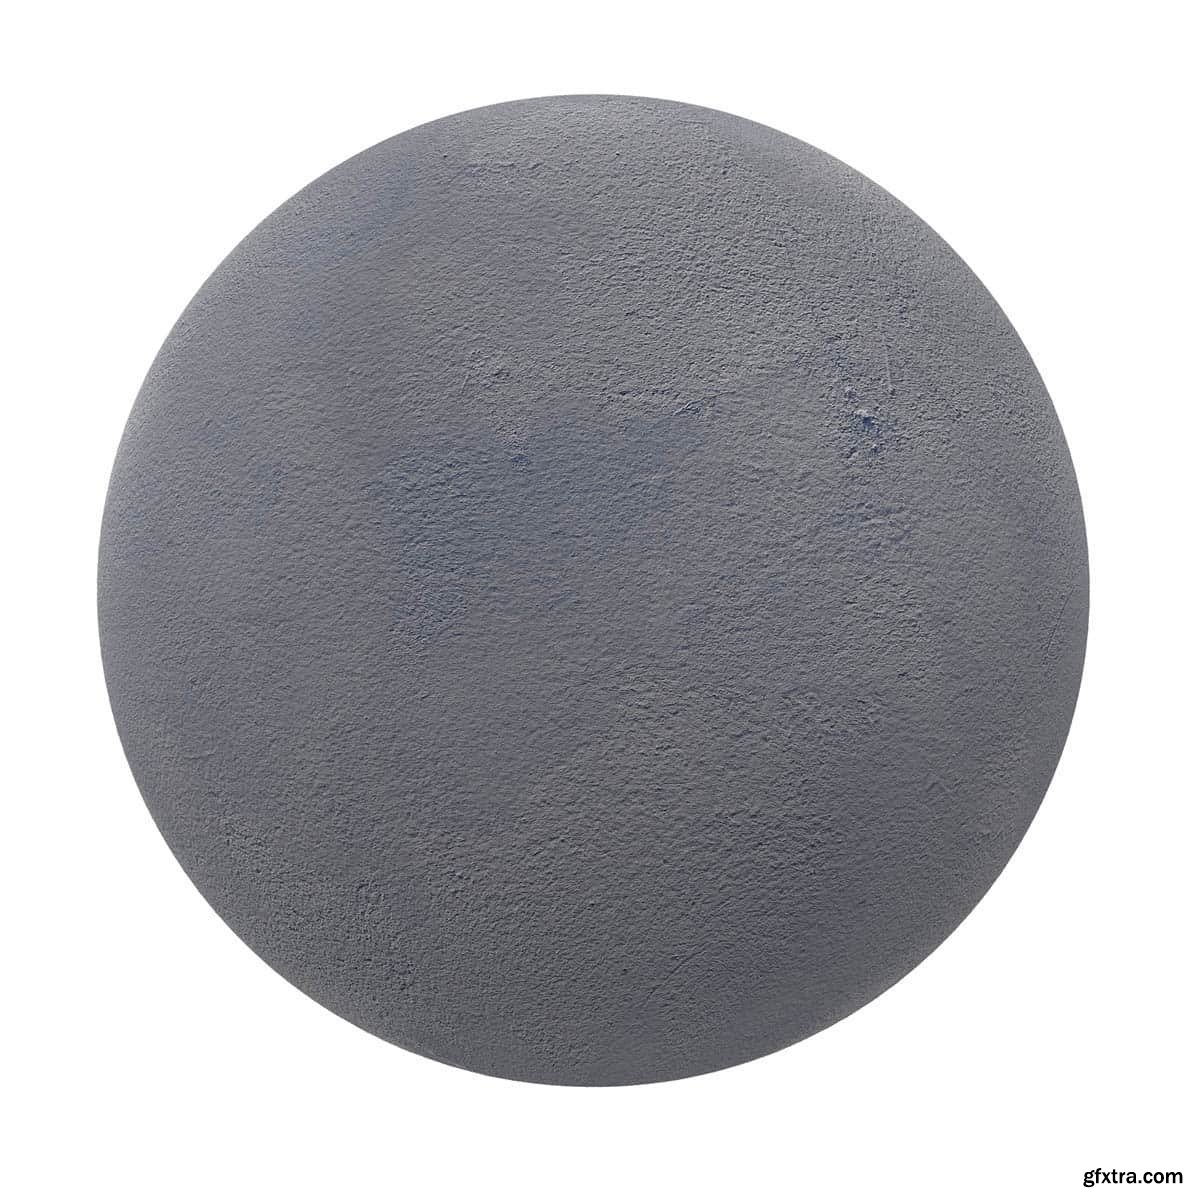 Blue concrete 01 PBR Texture » GFxtra